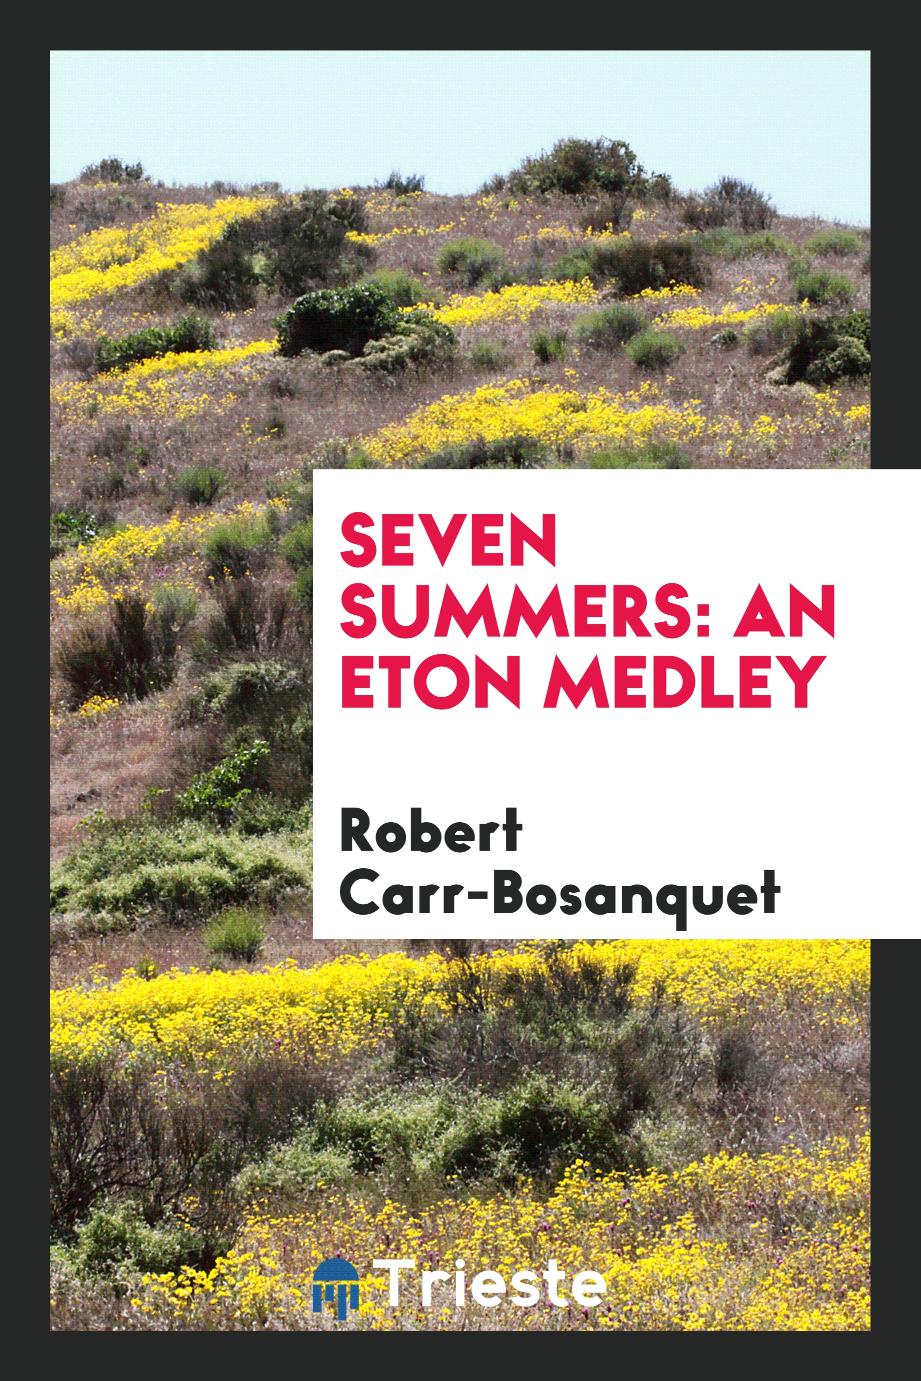 Seven summers: an Eton medley